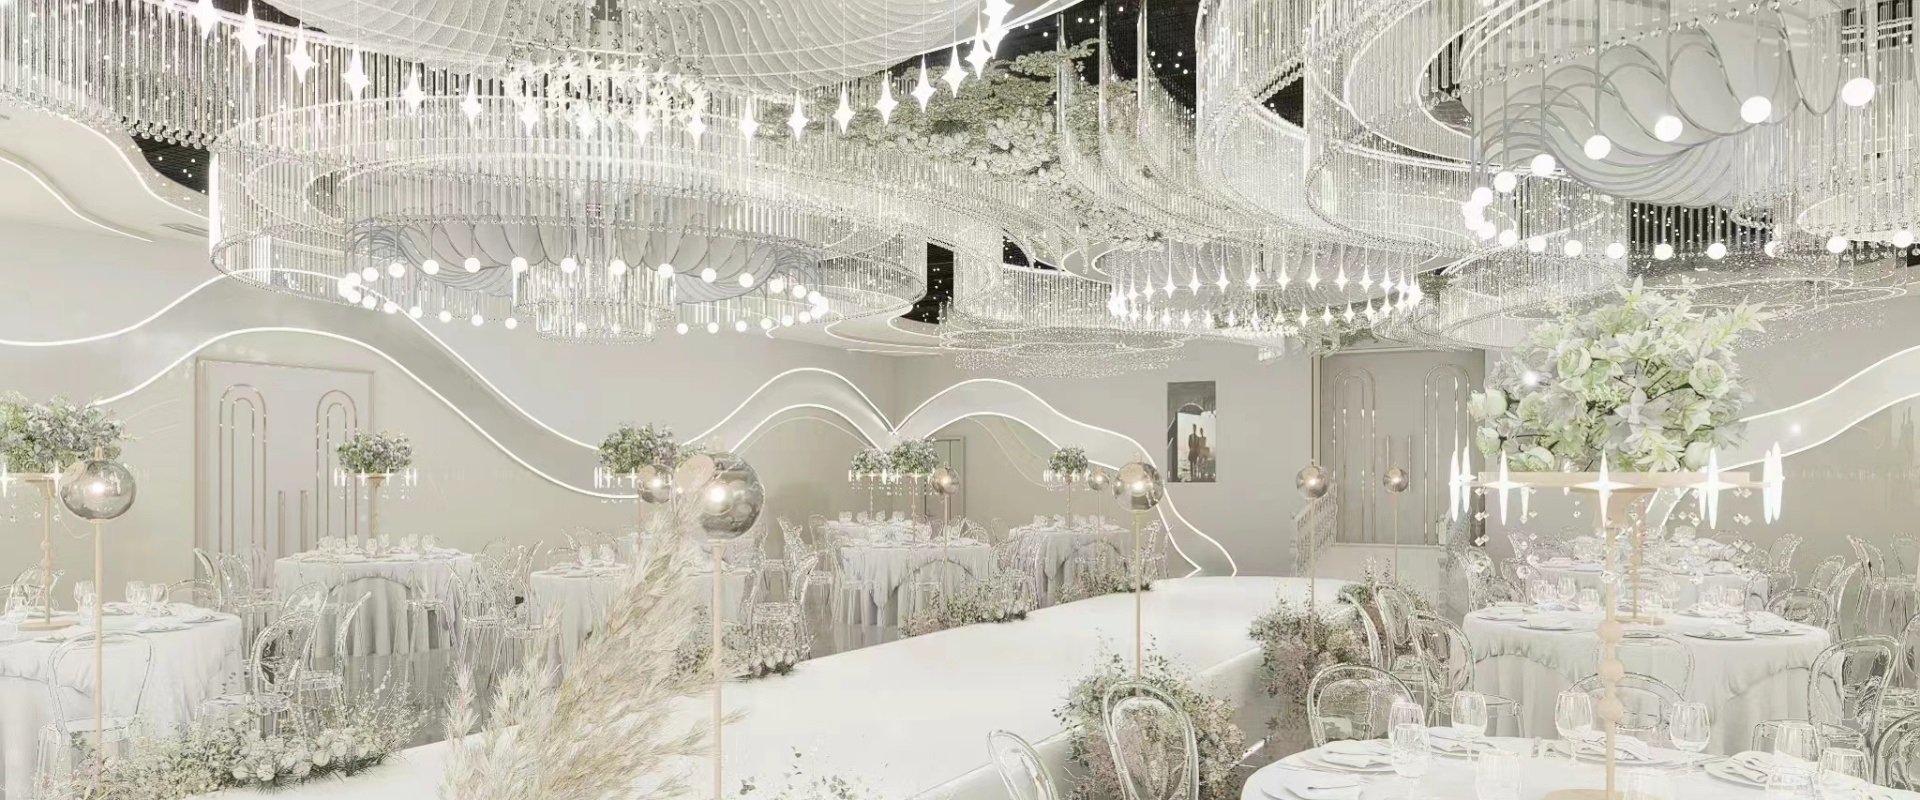 Dutti LED Non-standard Modern Chandelier Large Crystal Ceiling Pendant Lighting OEM ODM for Wedding Ballroom UK